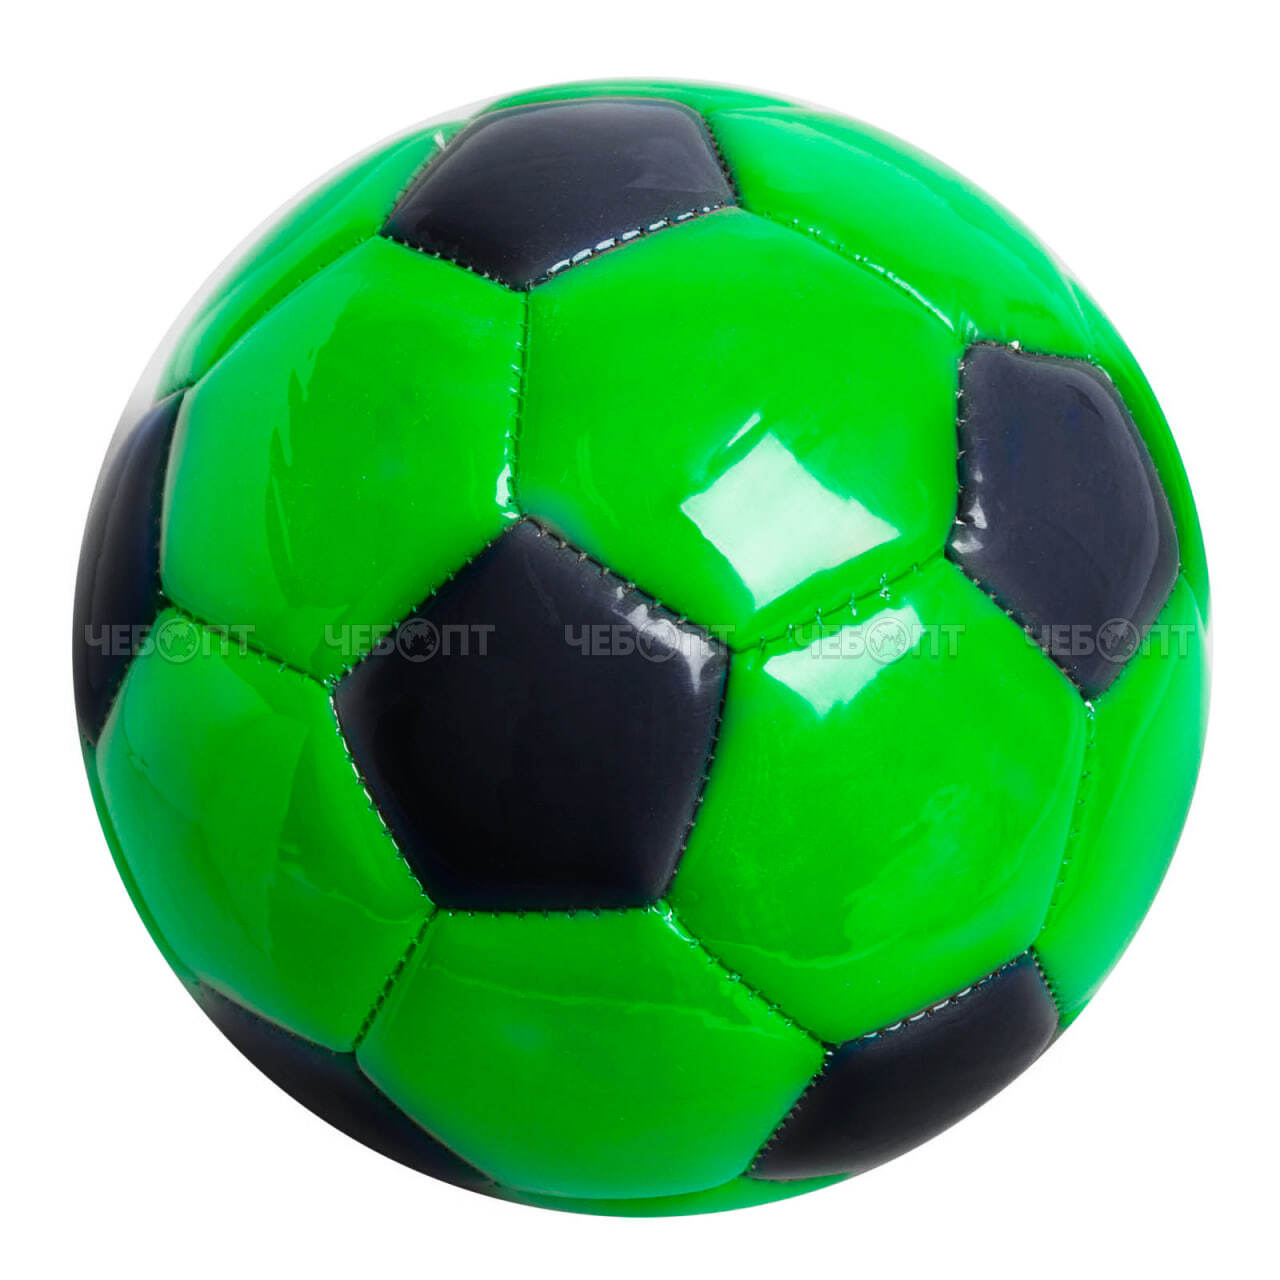 Мяч футбольный размер 2 в ассортименте арт. 060011 $ [200] ТМ Покатушки. ЧЕБОПТ.